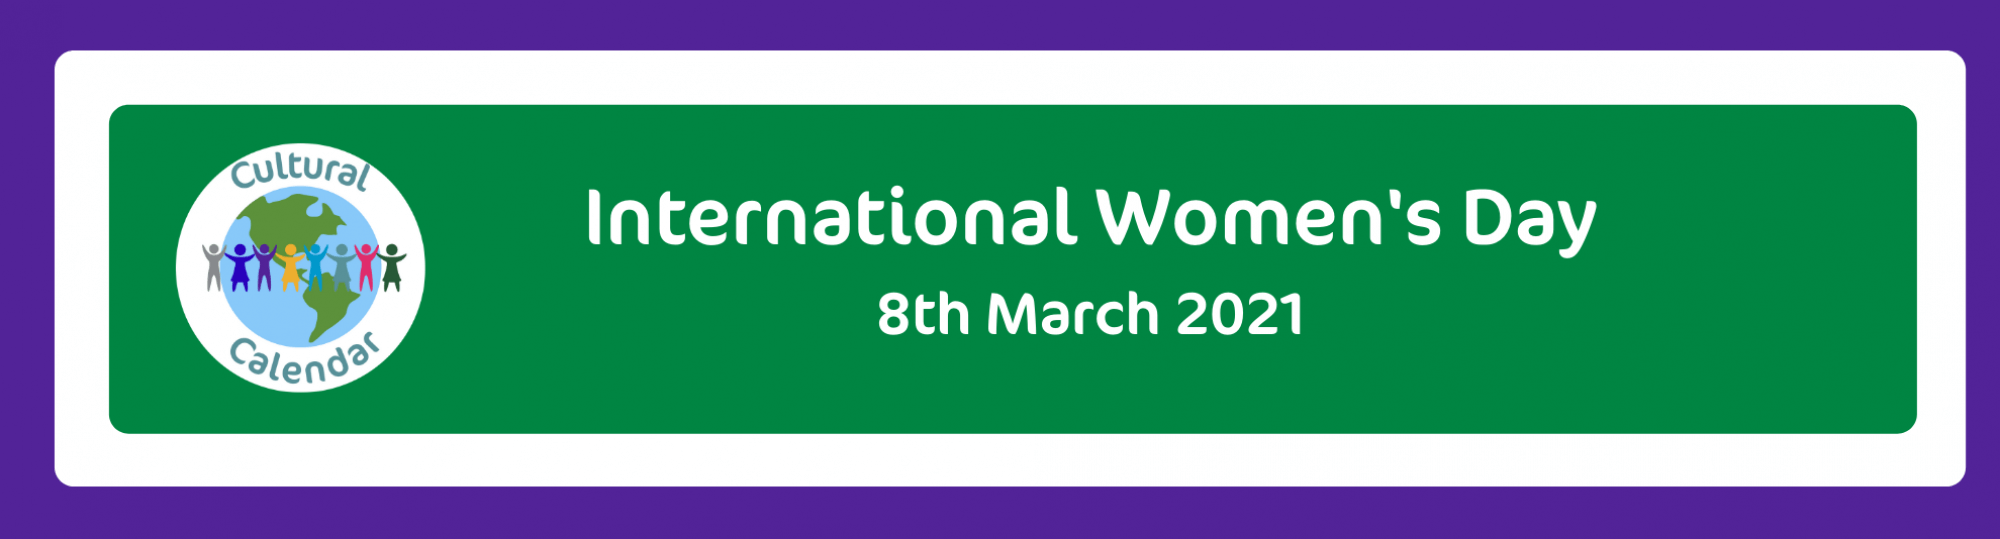 Cultural Calendar: International Women's Day